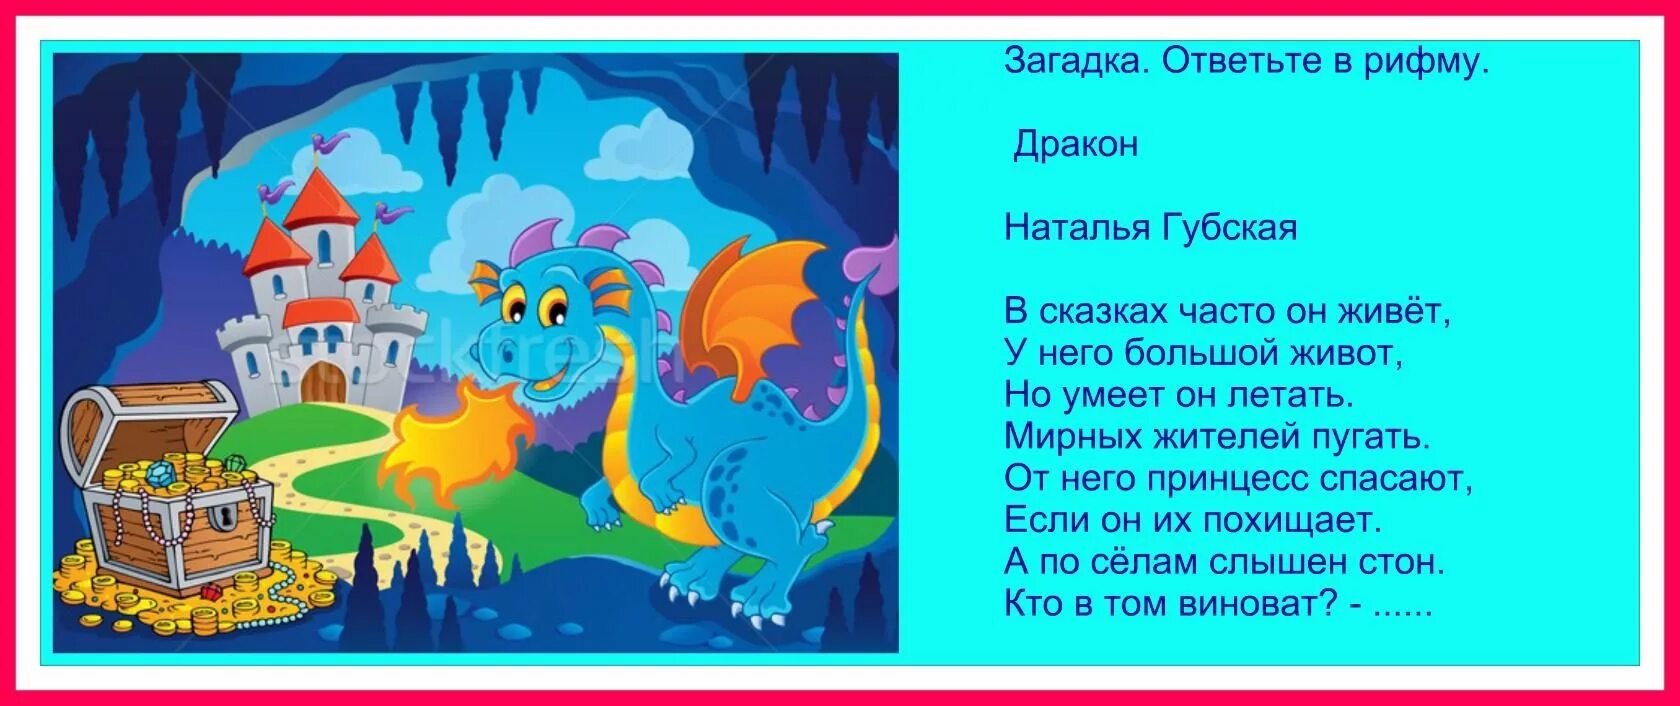 День трех драконов 11 апреля. Стихотворение про драконов. Детский стишок про драконов. Загадка про дракона для детей. Детское стихотворение про дракона.